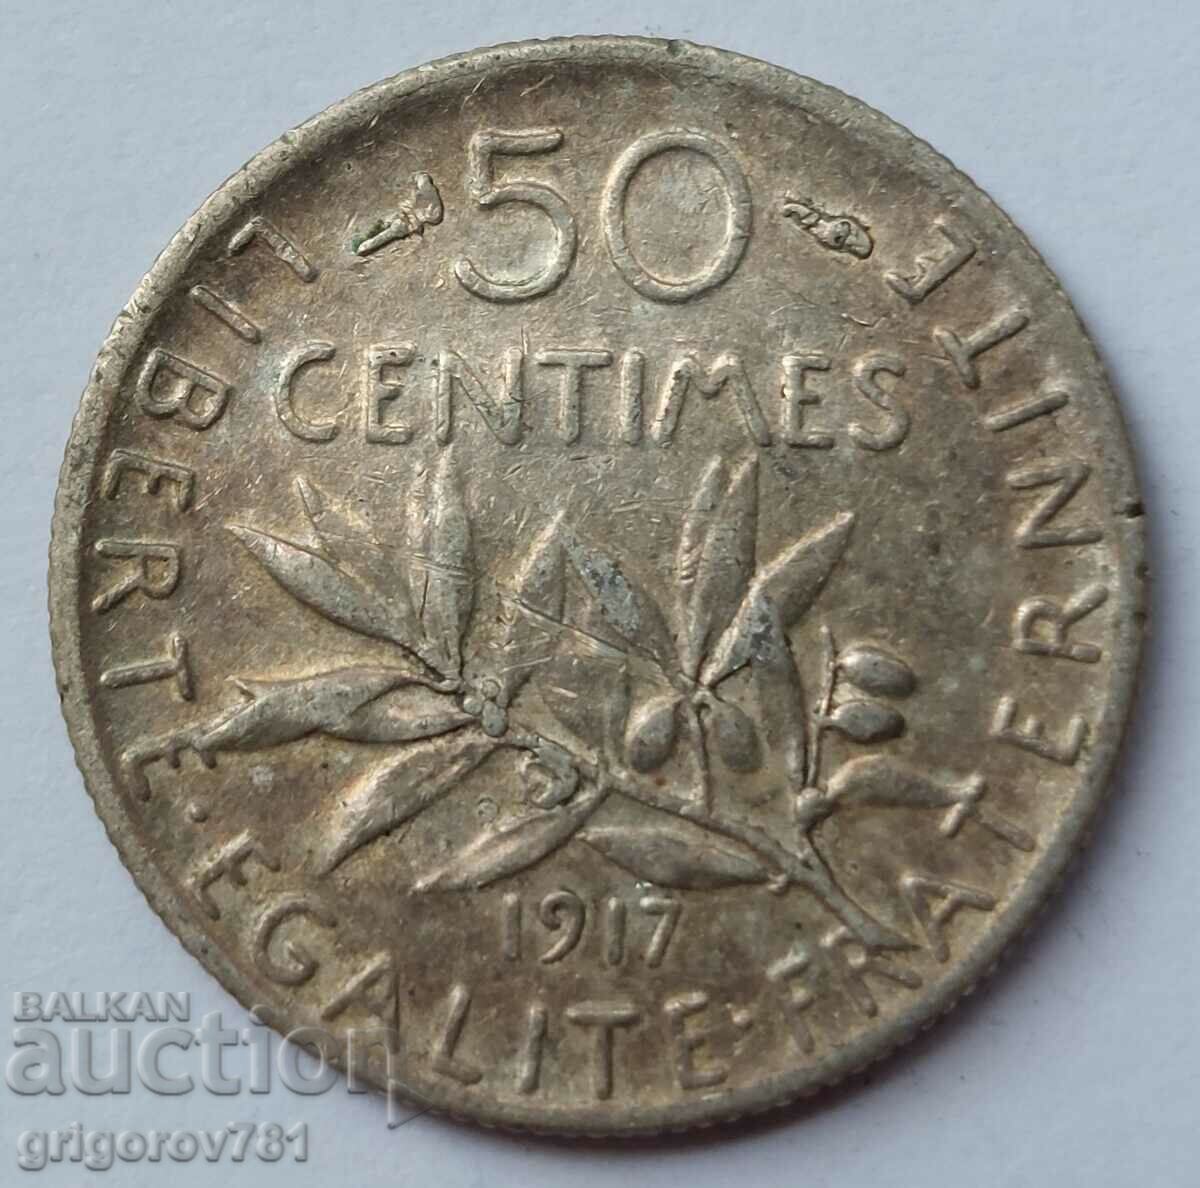 Ασημένιο 50 εκατοστά Γαλλία 1917 - ασημένιο νόμισμα №40